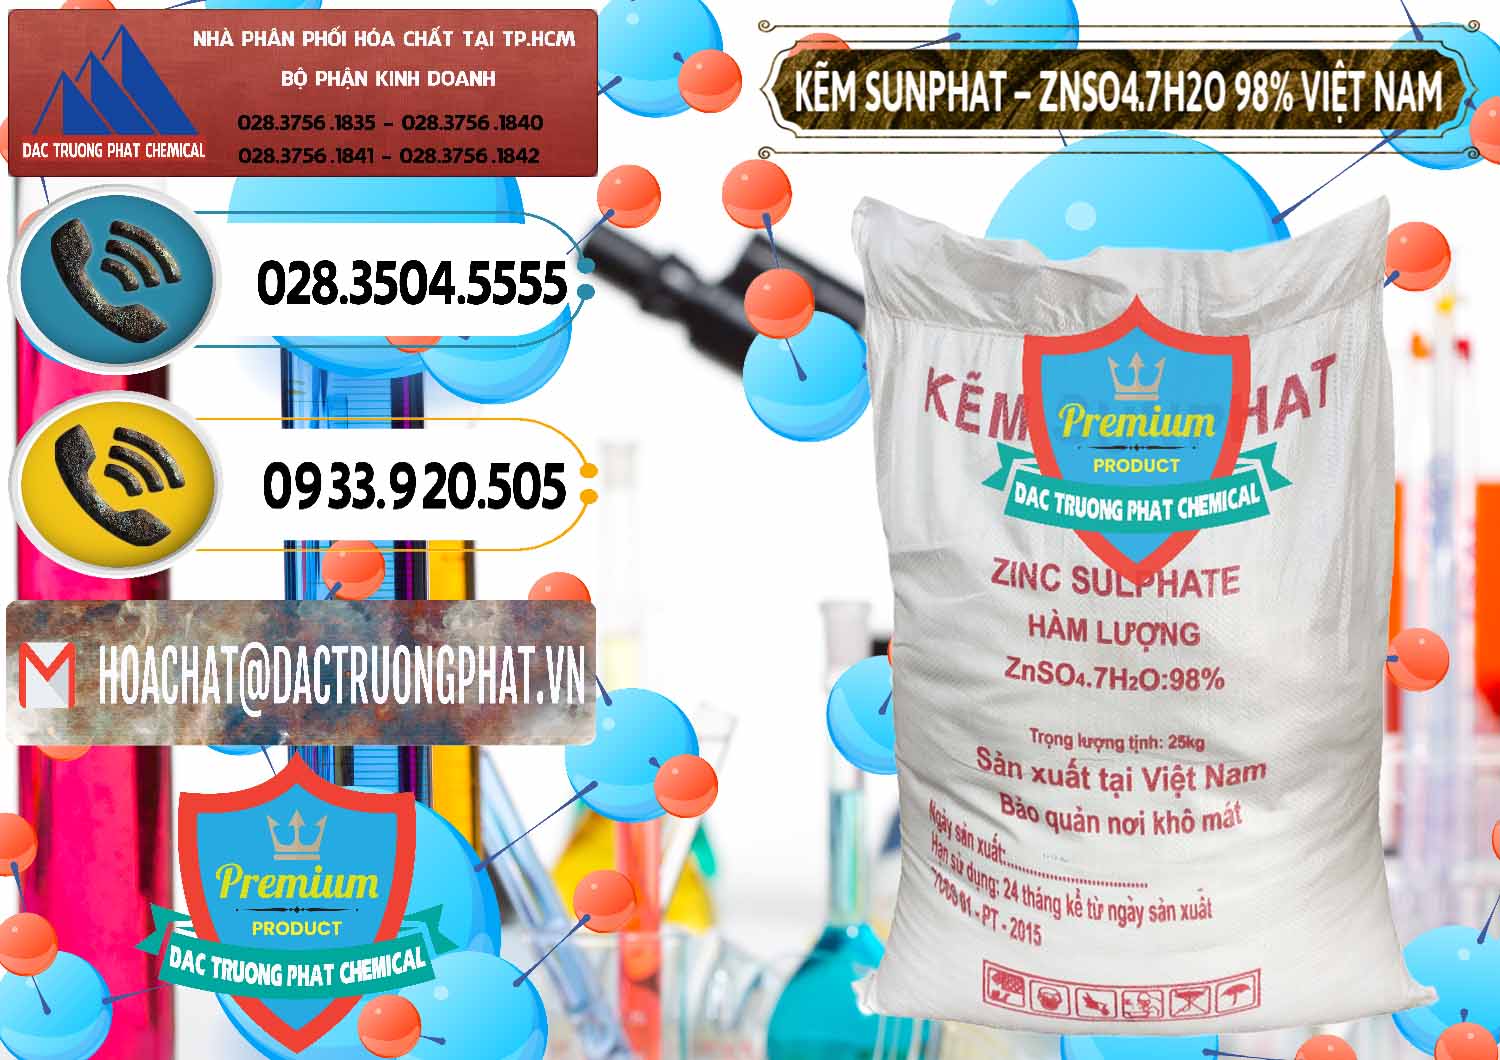 Bán Kẽm Sunfat – ZNSO4.7H2O Việt Nam - 0189 - Công ty chuyên cung ứng _ bán hóa chất tại TP.HCM - hoachatdetnhuom.vn